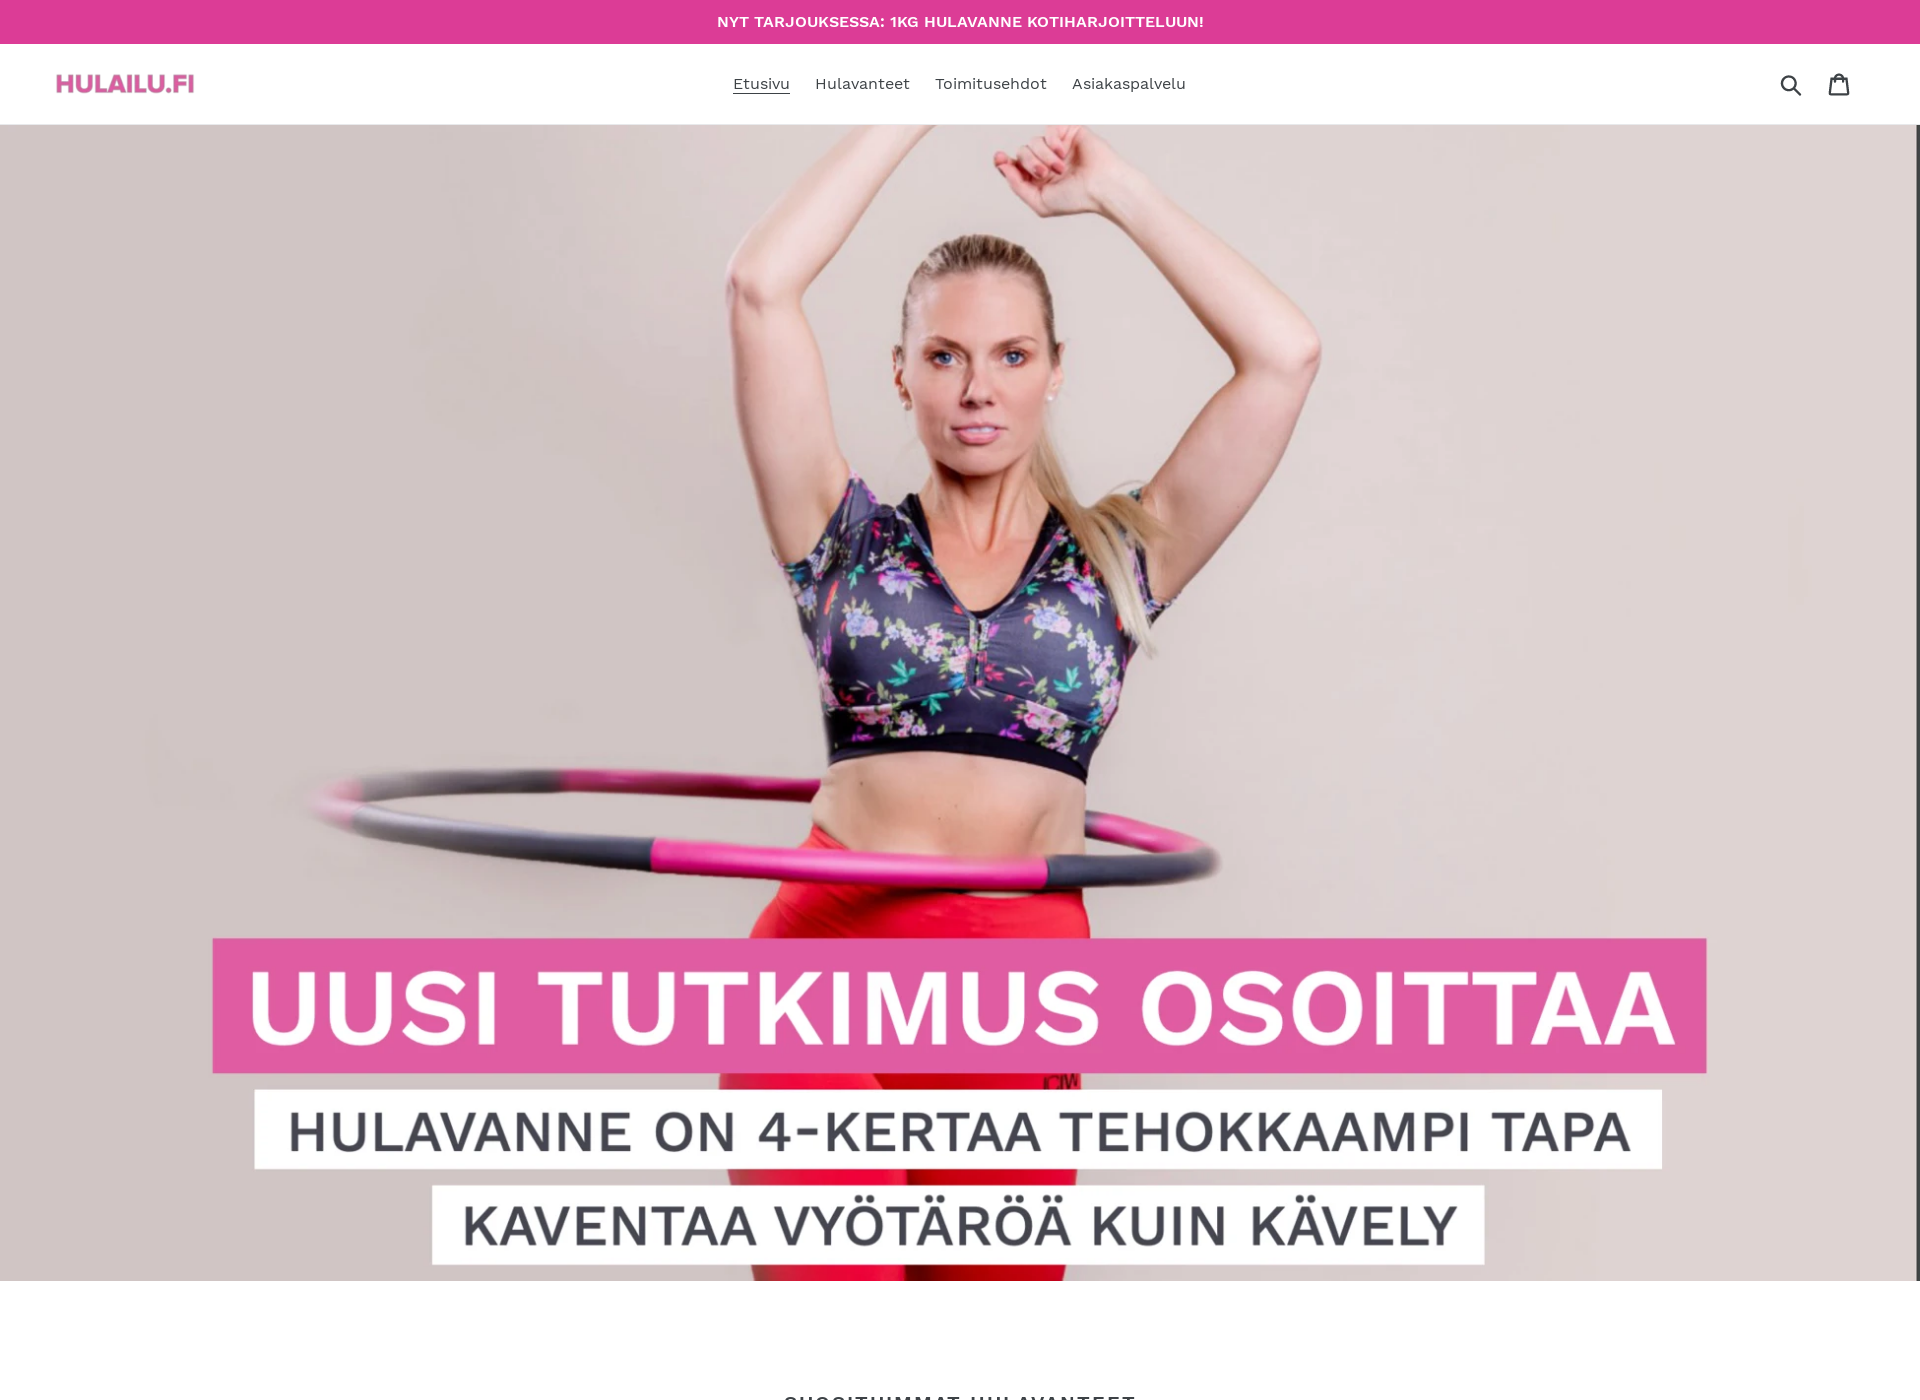 Näyttökuva hulailu.fi